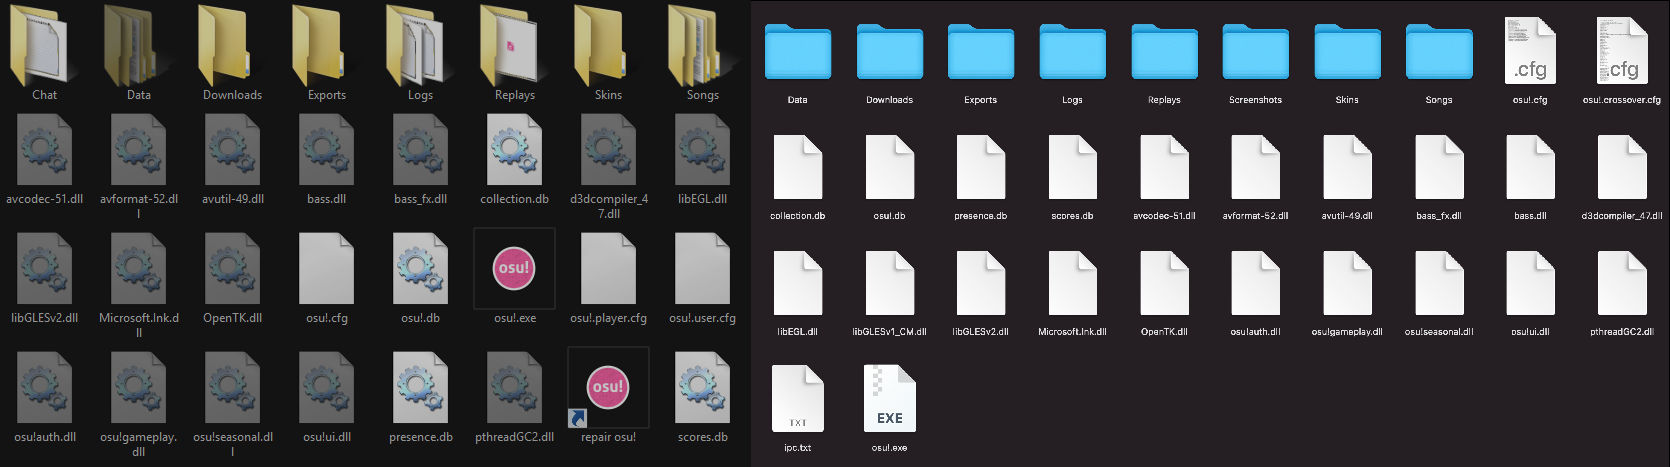 Struktur berkas pada folder instalasi osu! yang ada pada Windows dan macOS